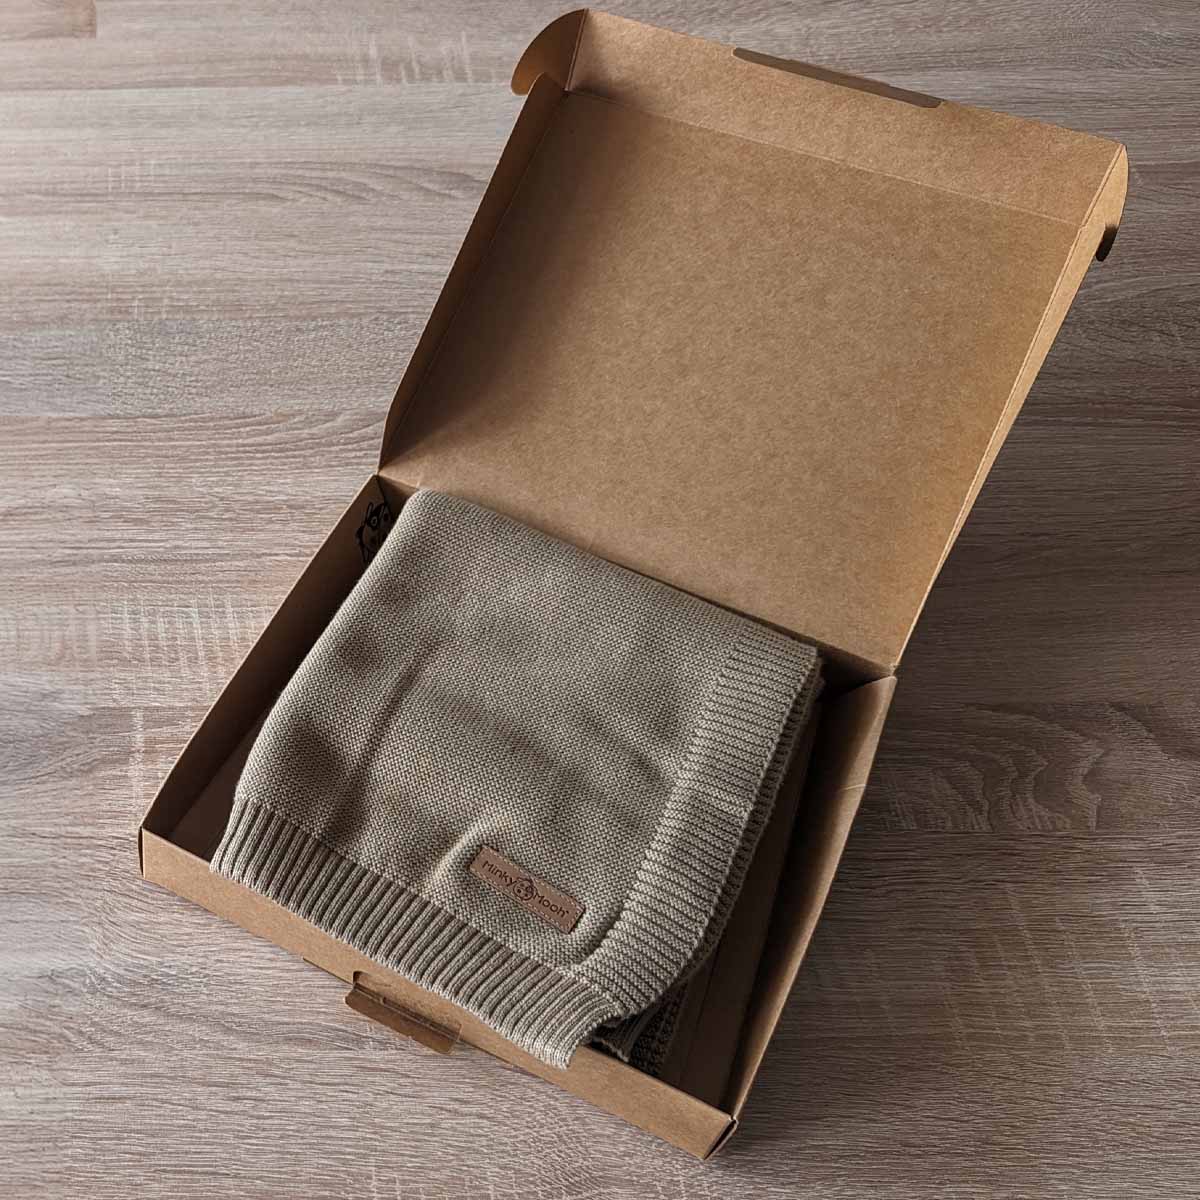 Gefaltete taupe farbene Bio-Baumwolldecke in einer offenen braunen Kartonverpackung.